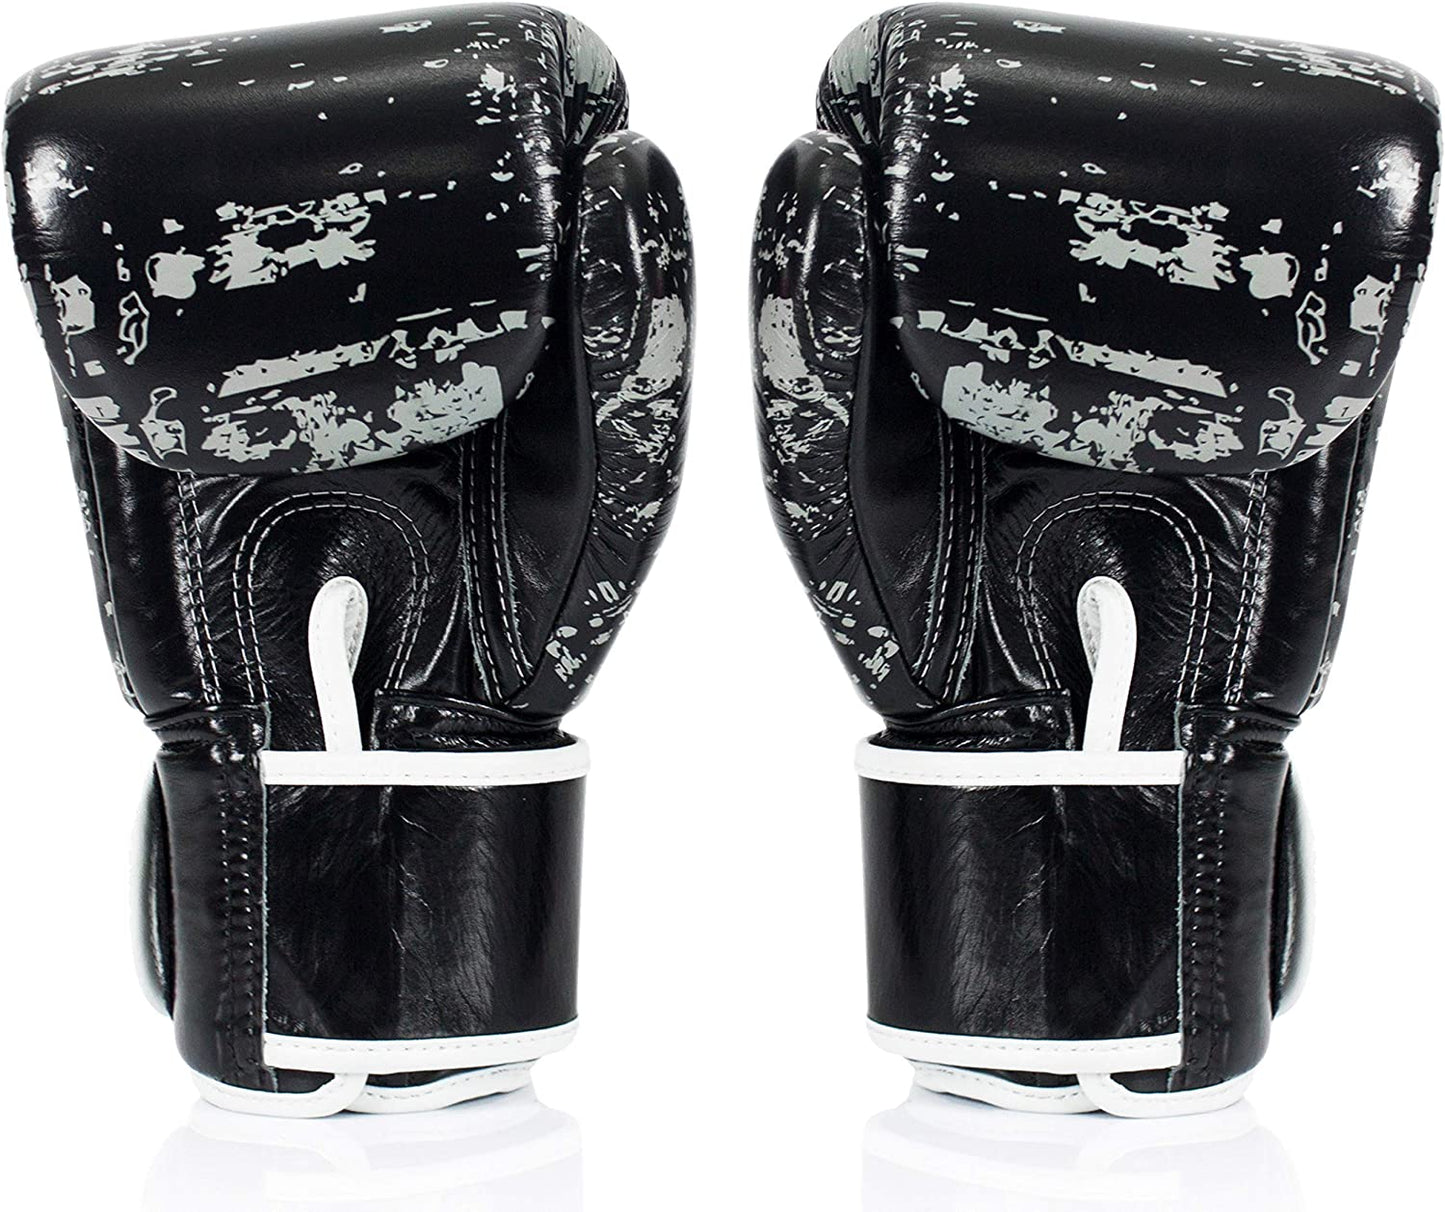 Fairtex - Dark Cloud Muay Thai Boxing Gloves - BGV1 Back